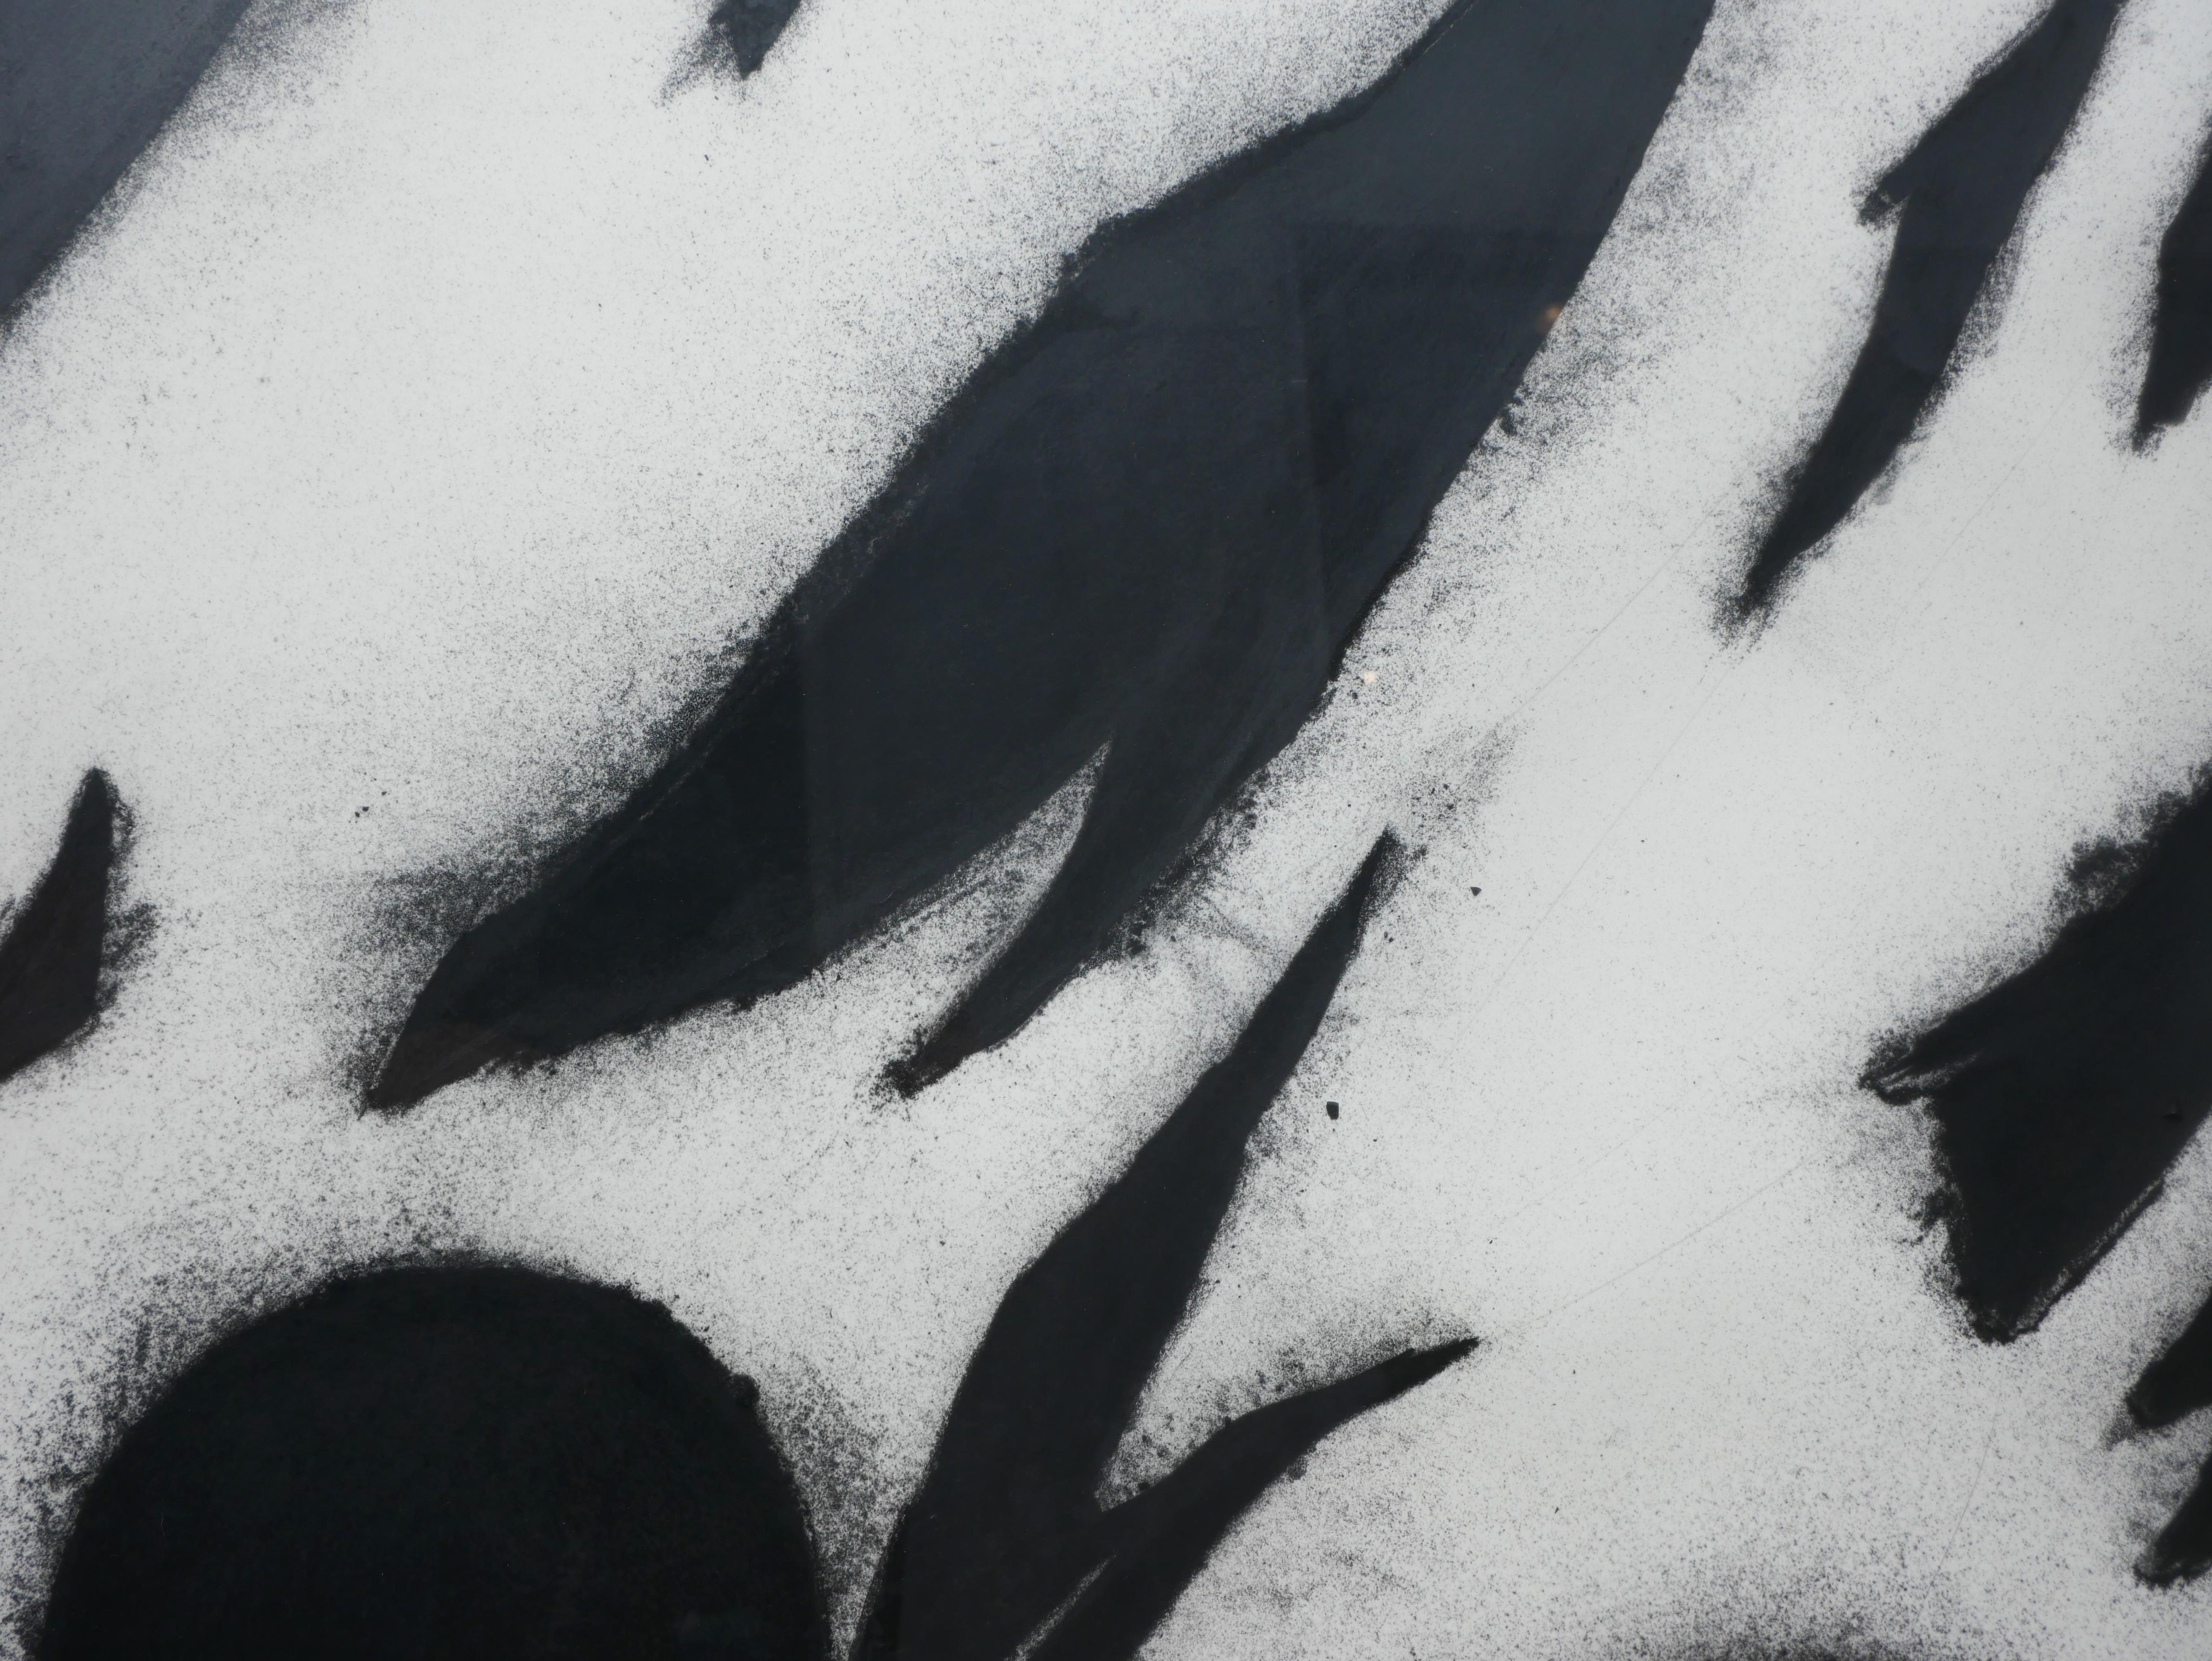 Moderne schwarz-weiße Kohlezeichnung eines Stilllebens des berühmten abstrakten Künstlers Donald Sultan. Das Werk besteht aus einer dynamischen Komposition kreisförmiger Formen vor einem weißen Hintergrund. Die satten Schwarztöne, die für Sultans